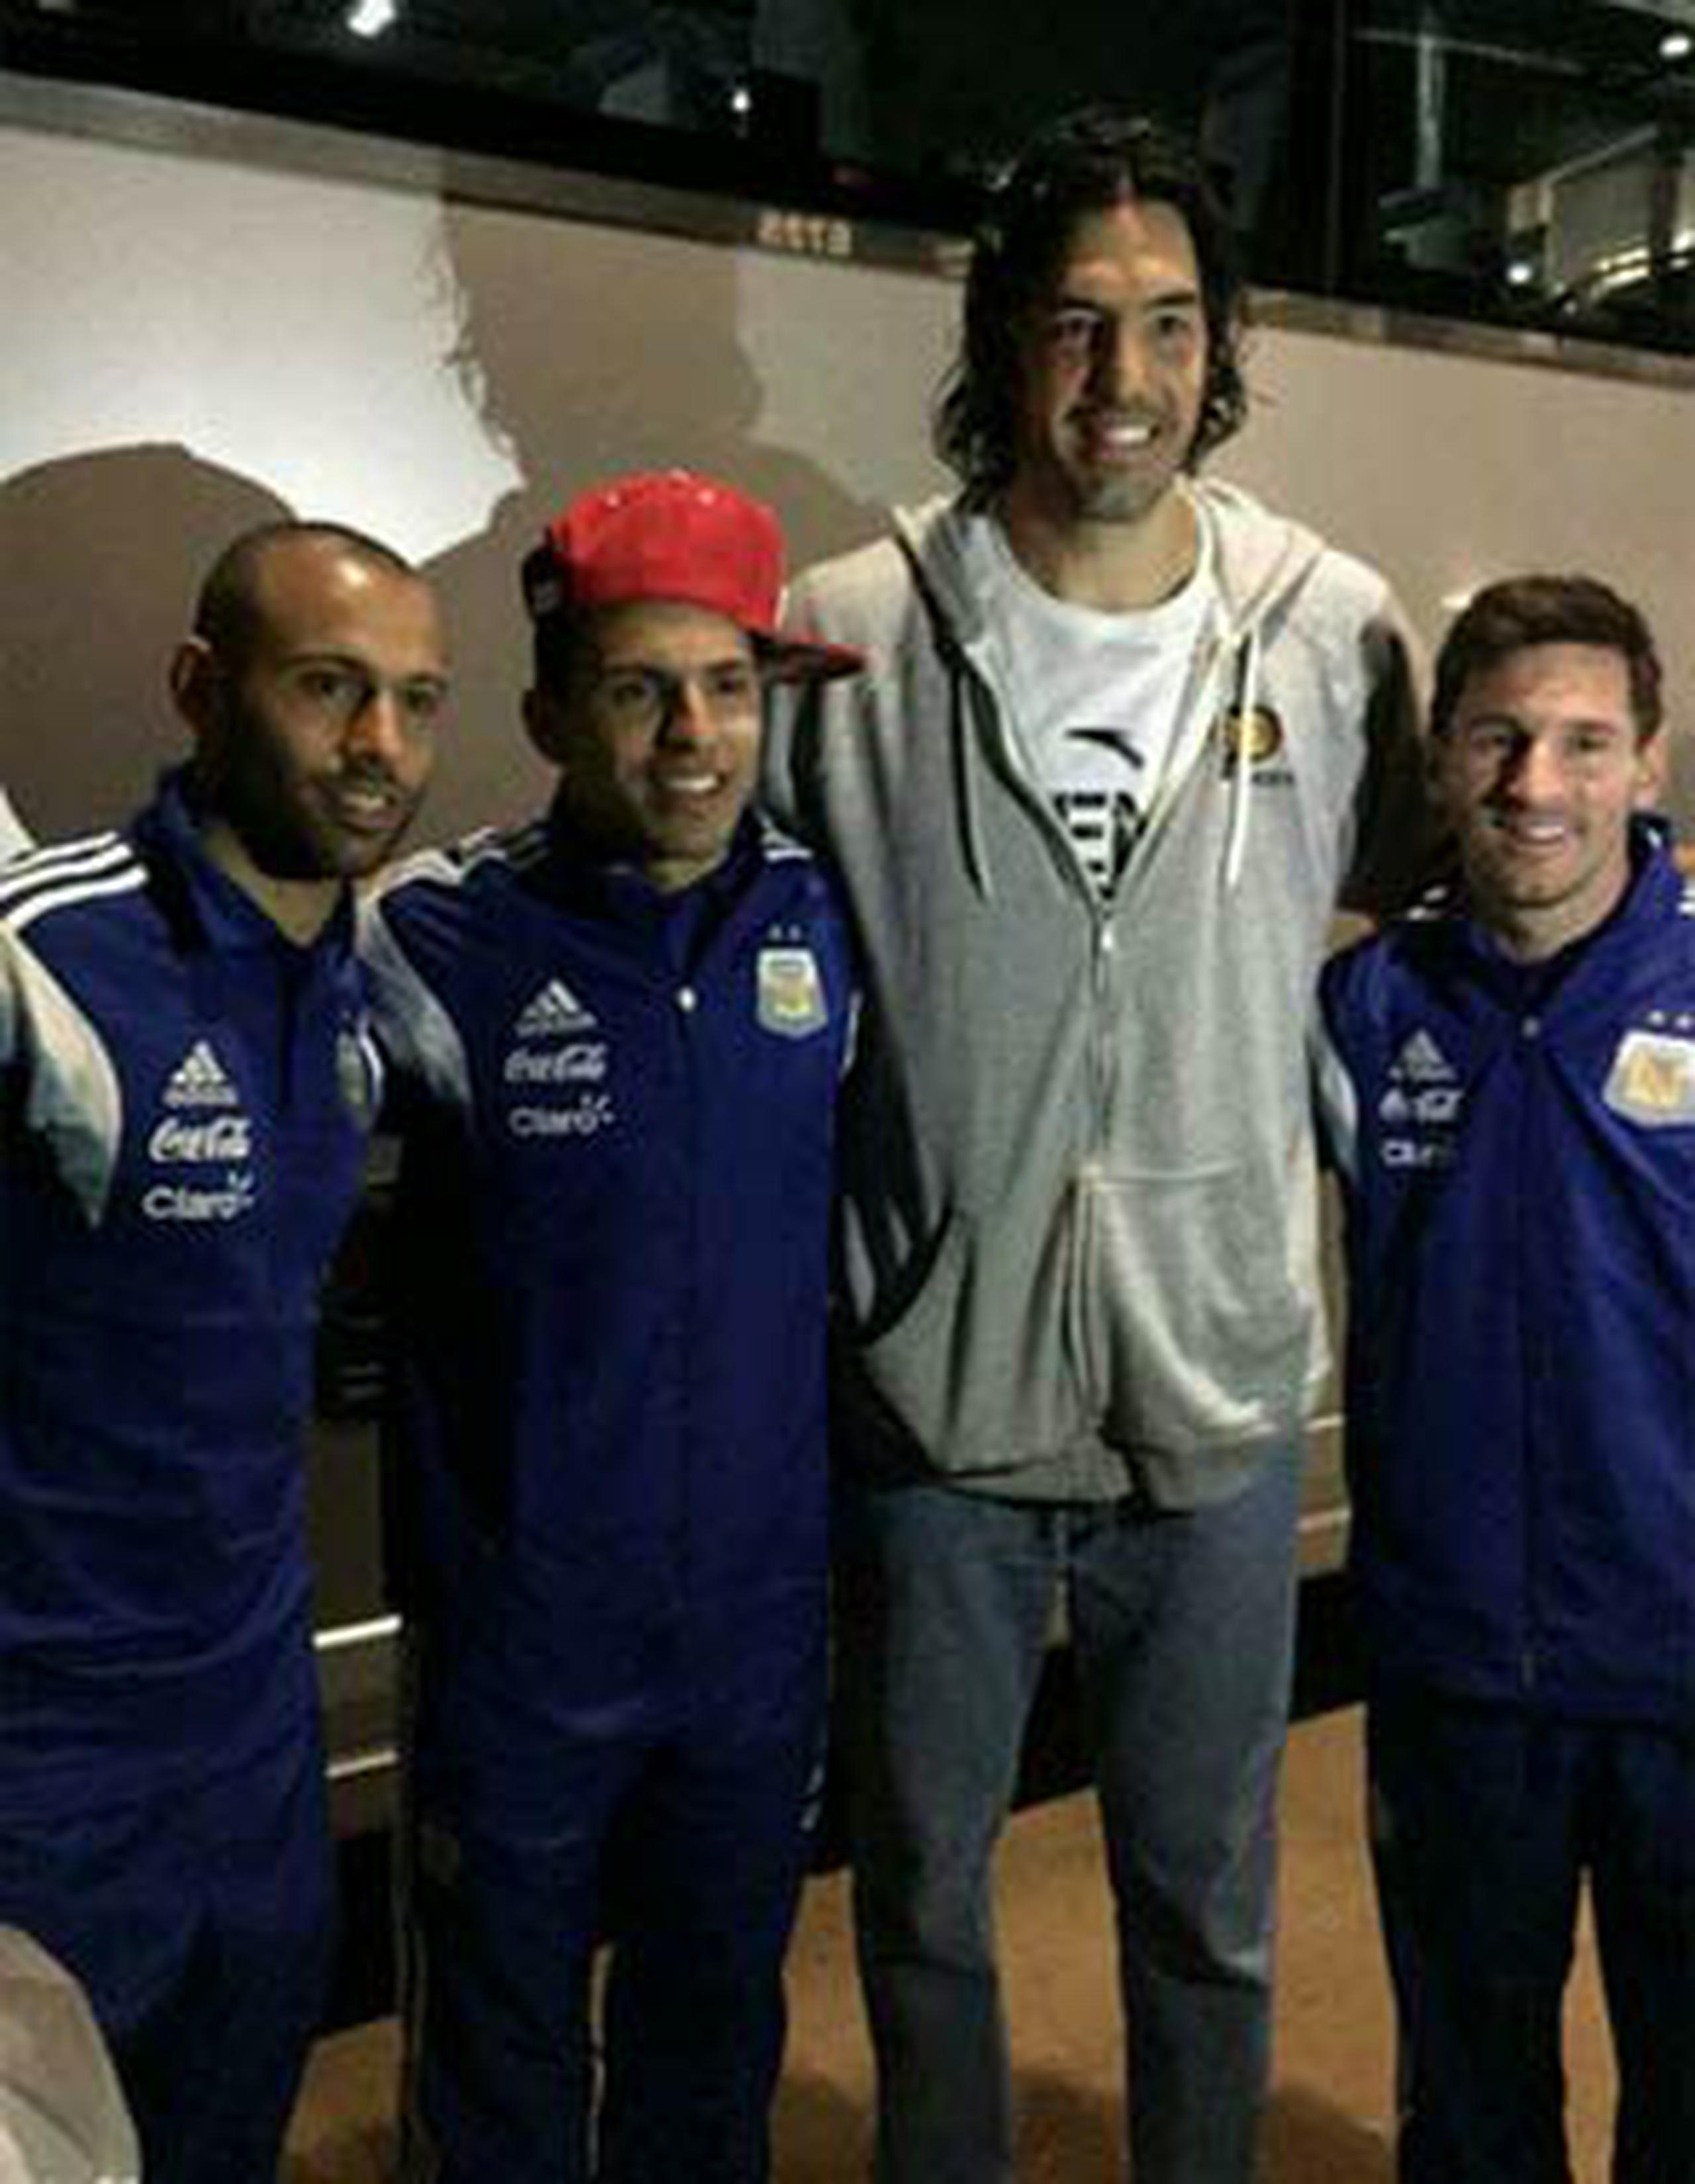 Scola publicó una foto en su cuenta de Twitter junto con Messi, Mascherano y Sergio “Kun” Agüero en la que se puede apreciar las diferencias de estatura entre los futbolistas y el baloncelista.